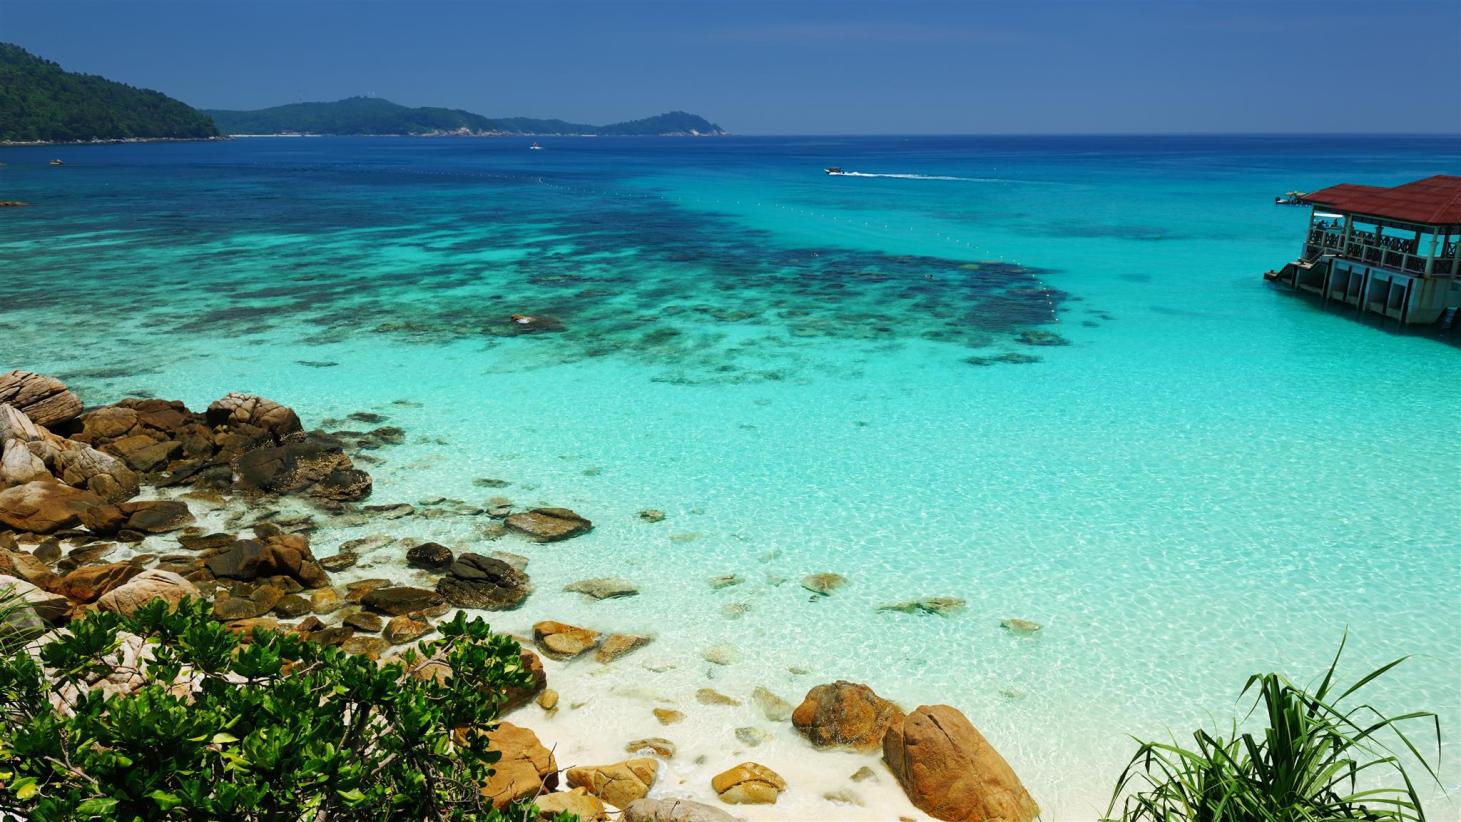 Quần đảo Perhentian và vô số những bãi biển đẹp như tranh vẽ